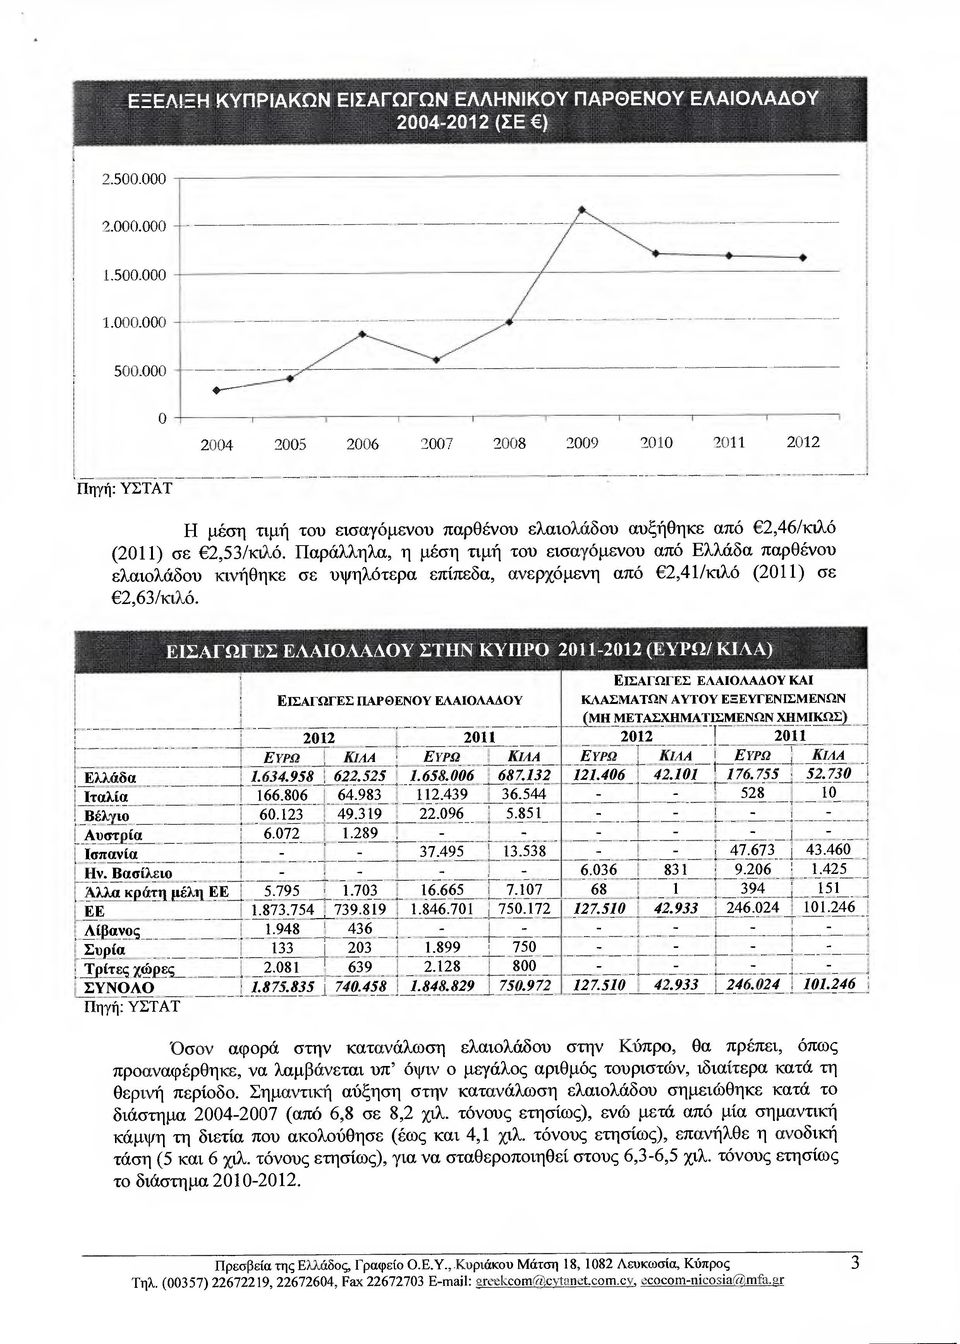 Παράλληλα, η µέση τιµή τον εισαγόµενου από Ελλάδα παρθένου ελαιολάδου κινήθηκε σε υψηλότερα επίπεδα, ανερχόµενη από 2,41/κιλό (2011) σε 2,63/κιλό.